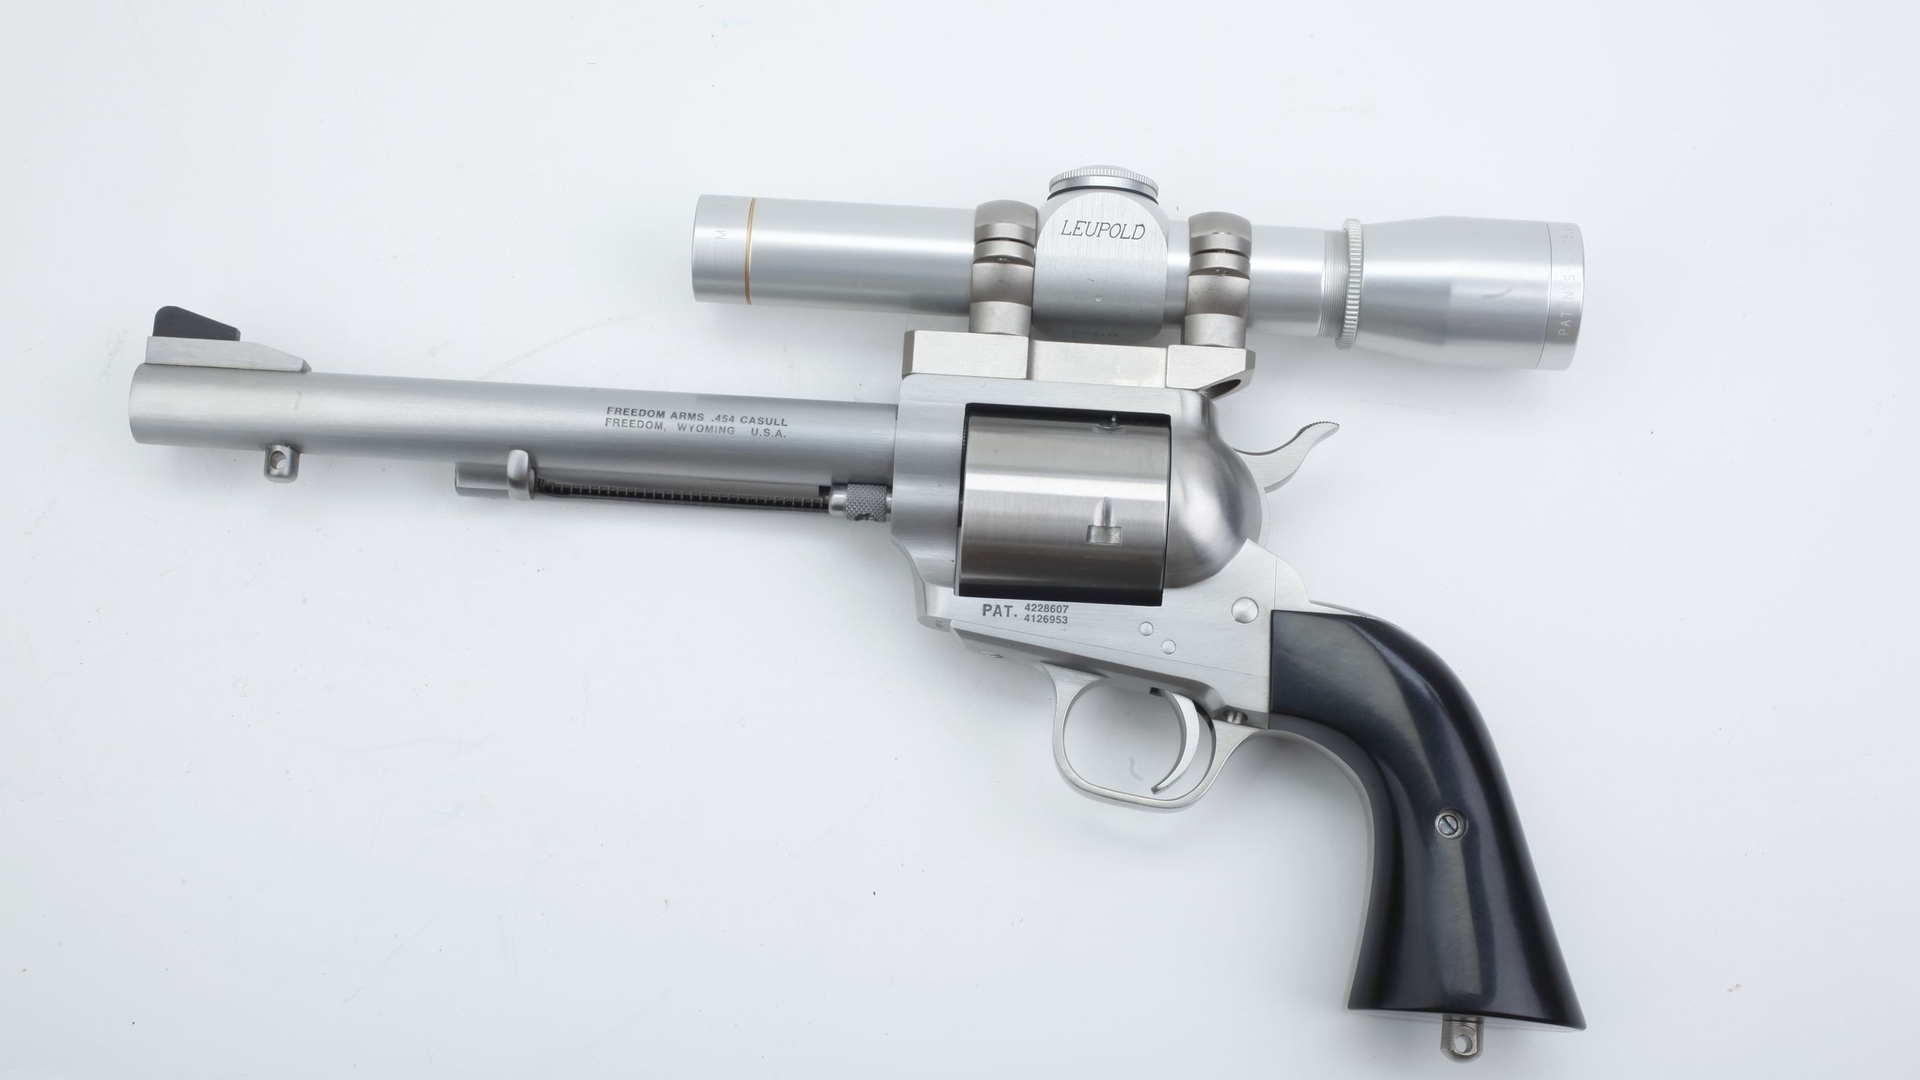 Скачать картинку Револьвер Freedom Arms 454 Casull, Оружие в телефон бесплатно.